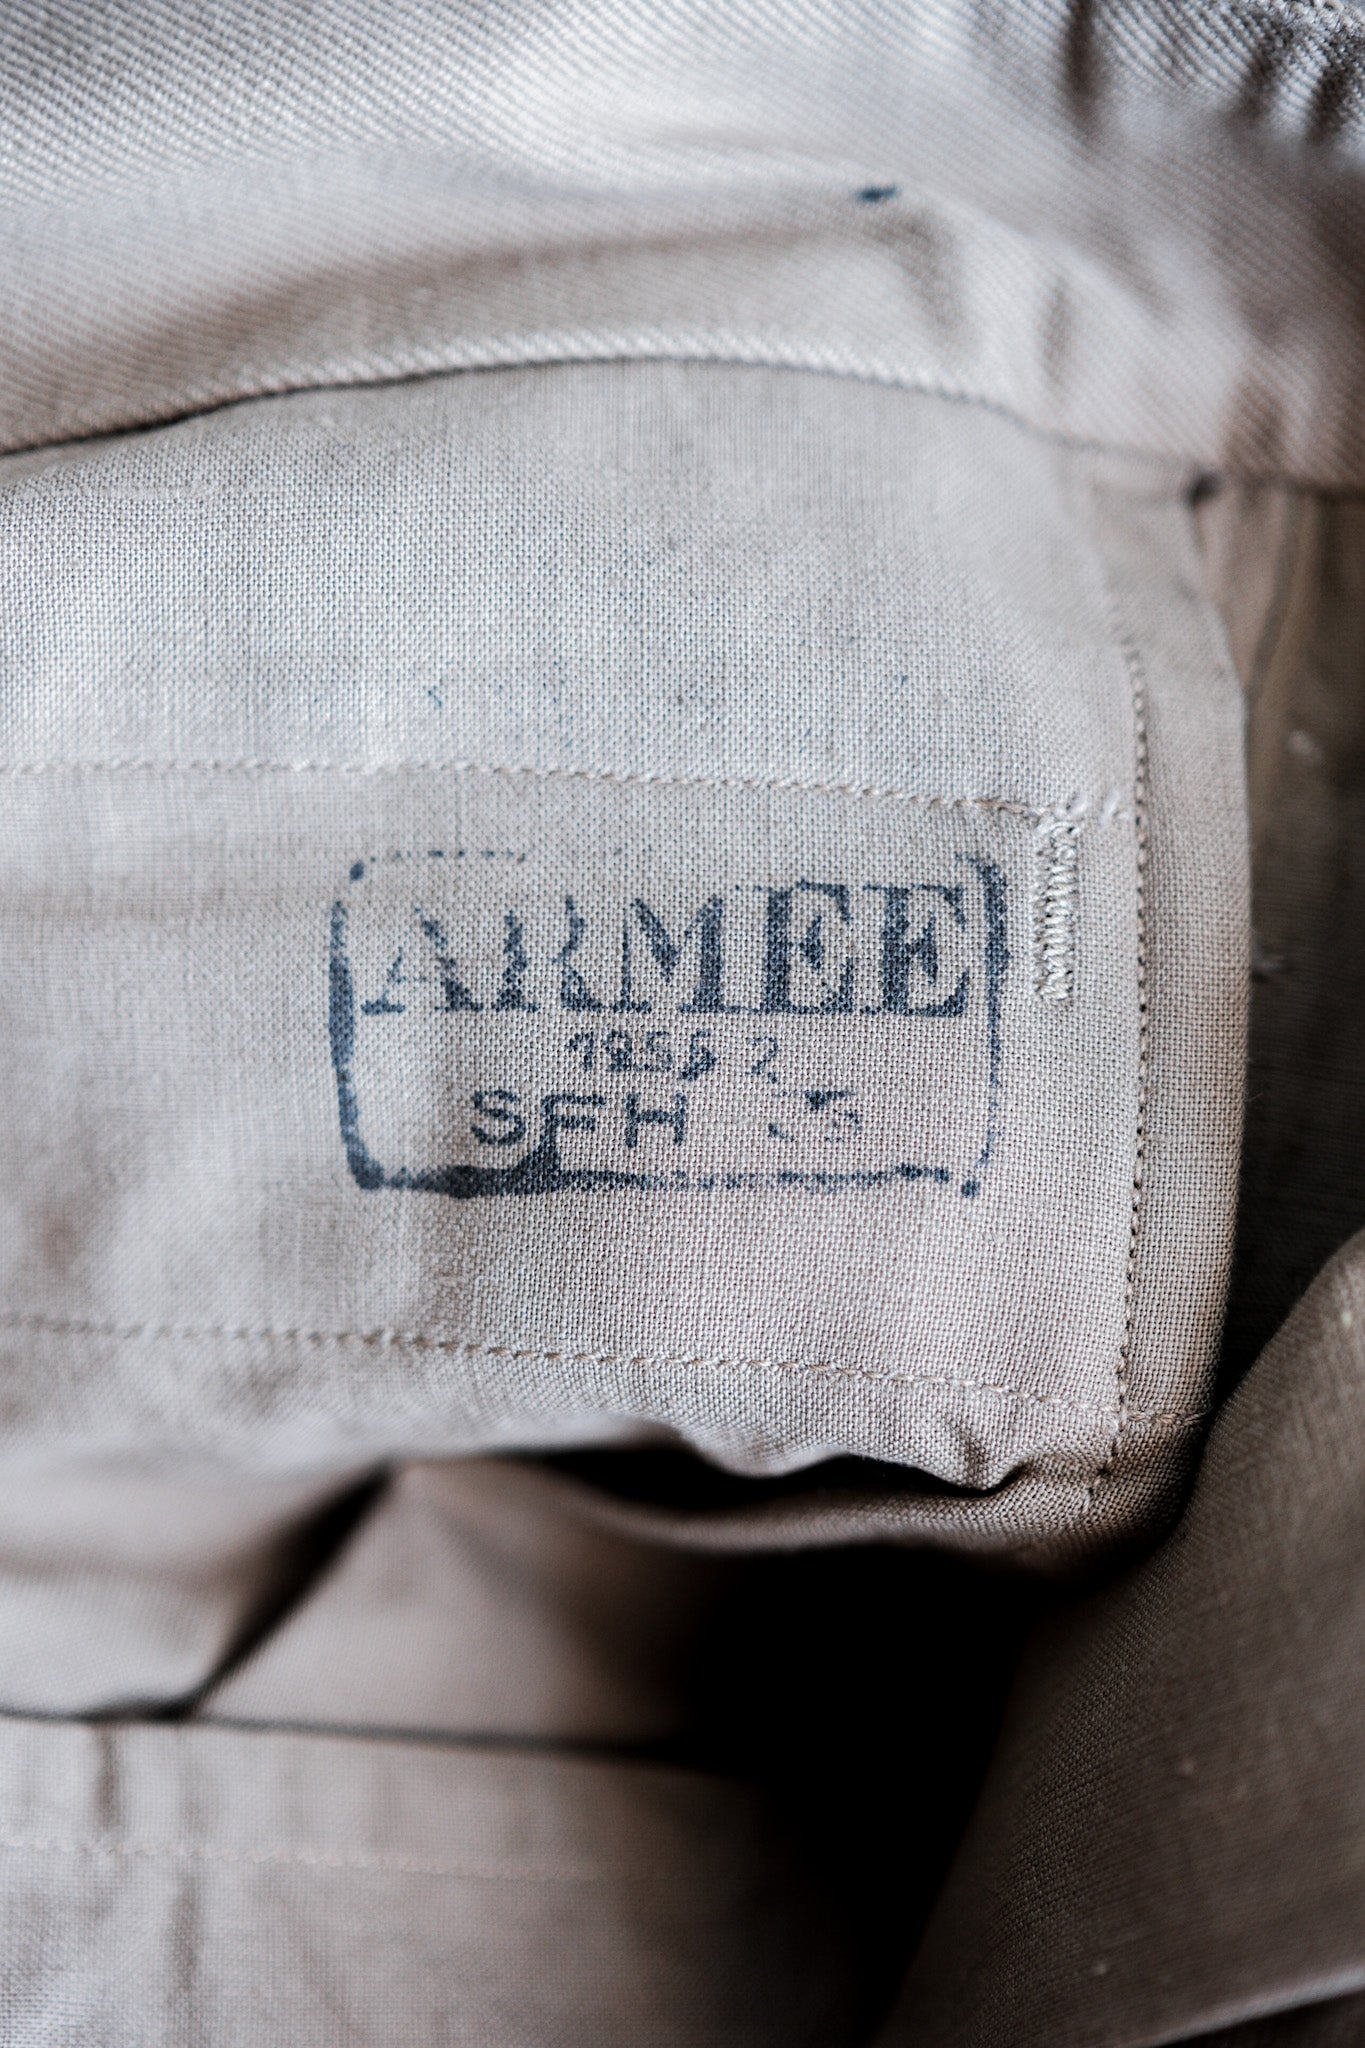 [〜50年代]法國陸軍M52 Chino褲子大小。12“死庫存”